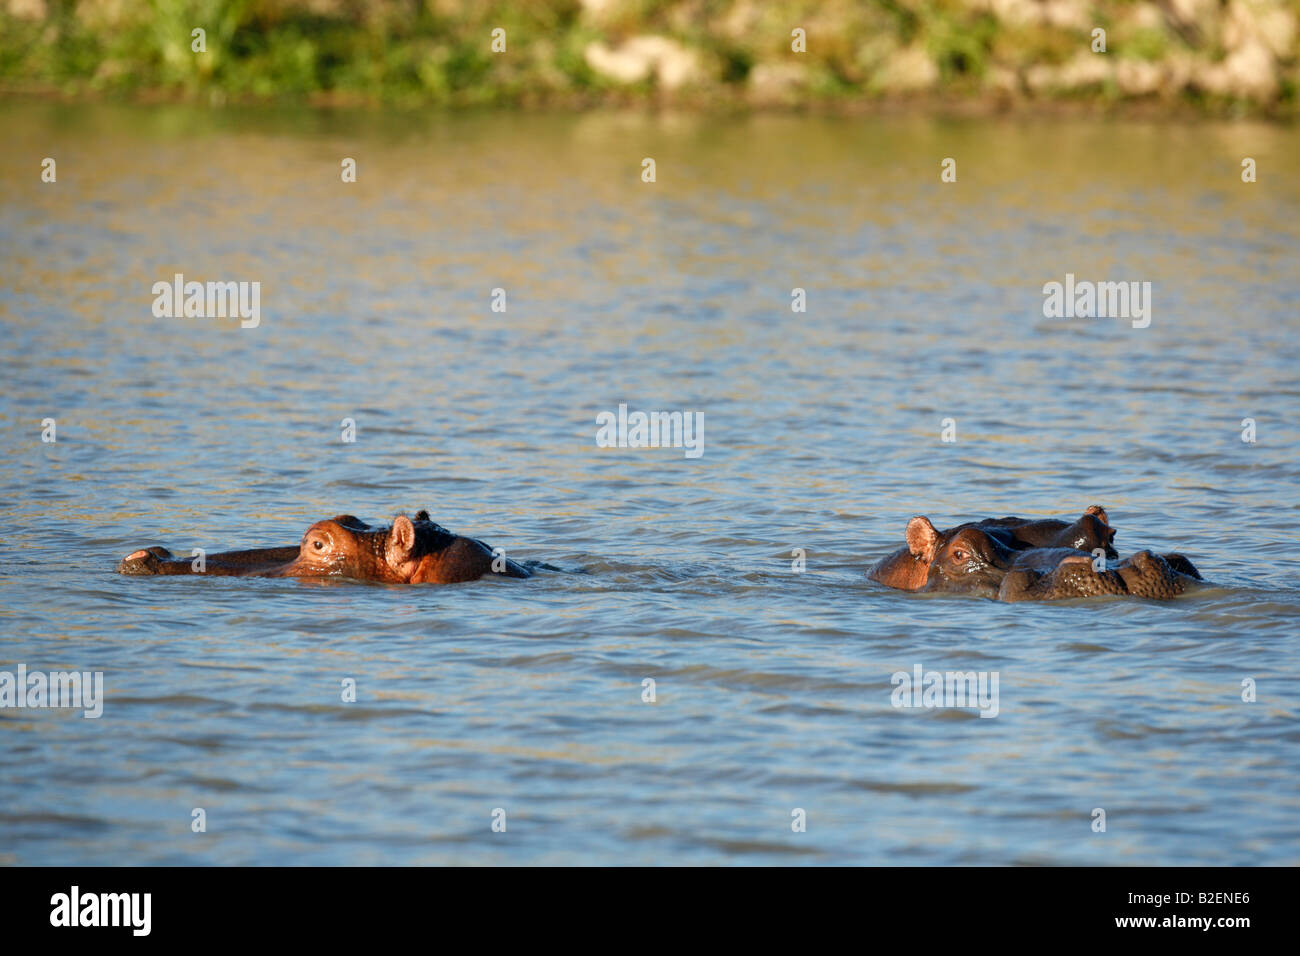 Paar von Nilpferd in einem See versenkt Stockfoto